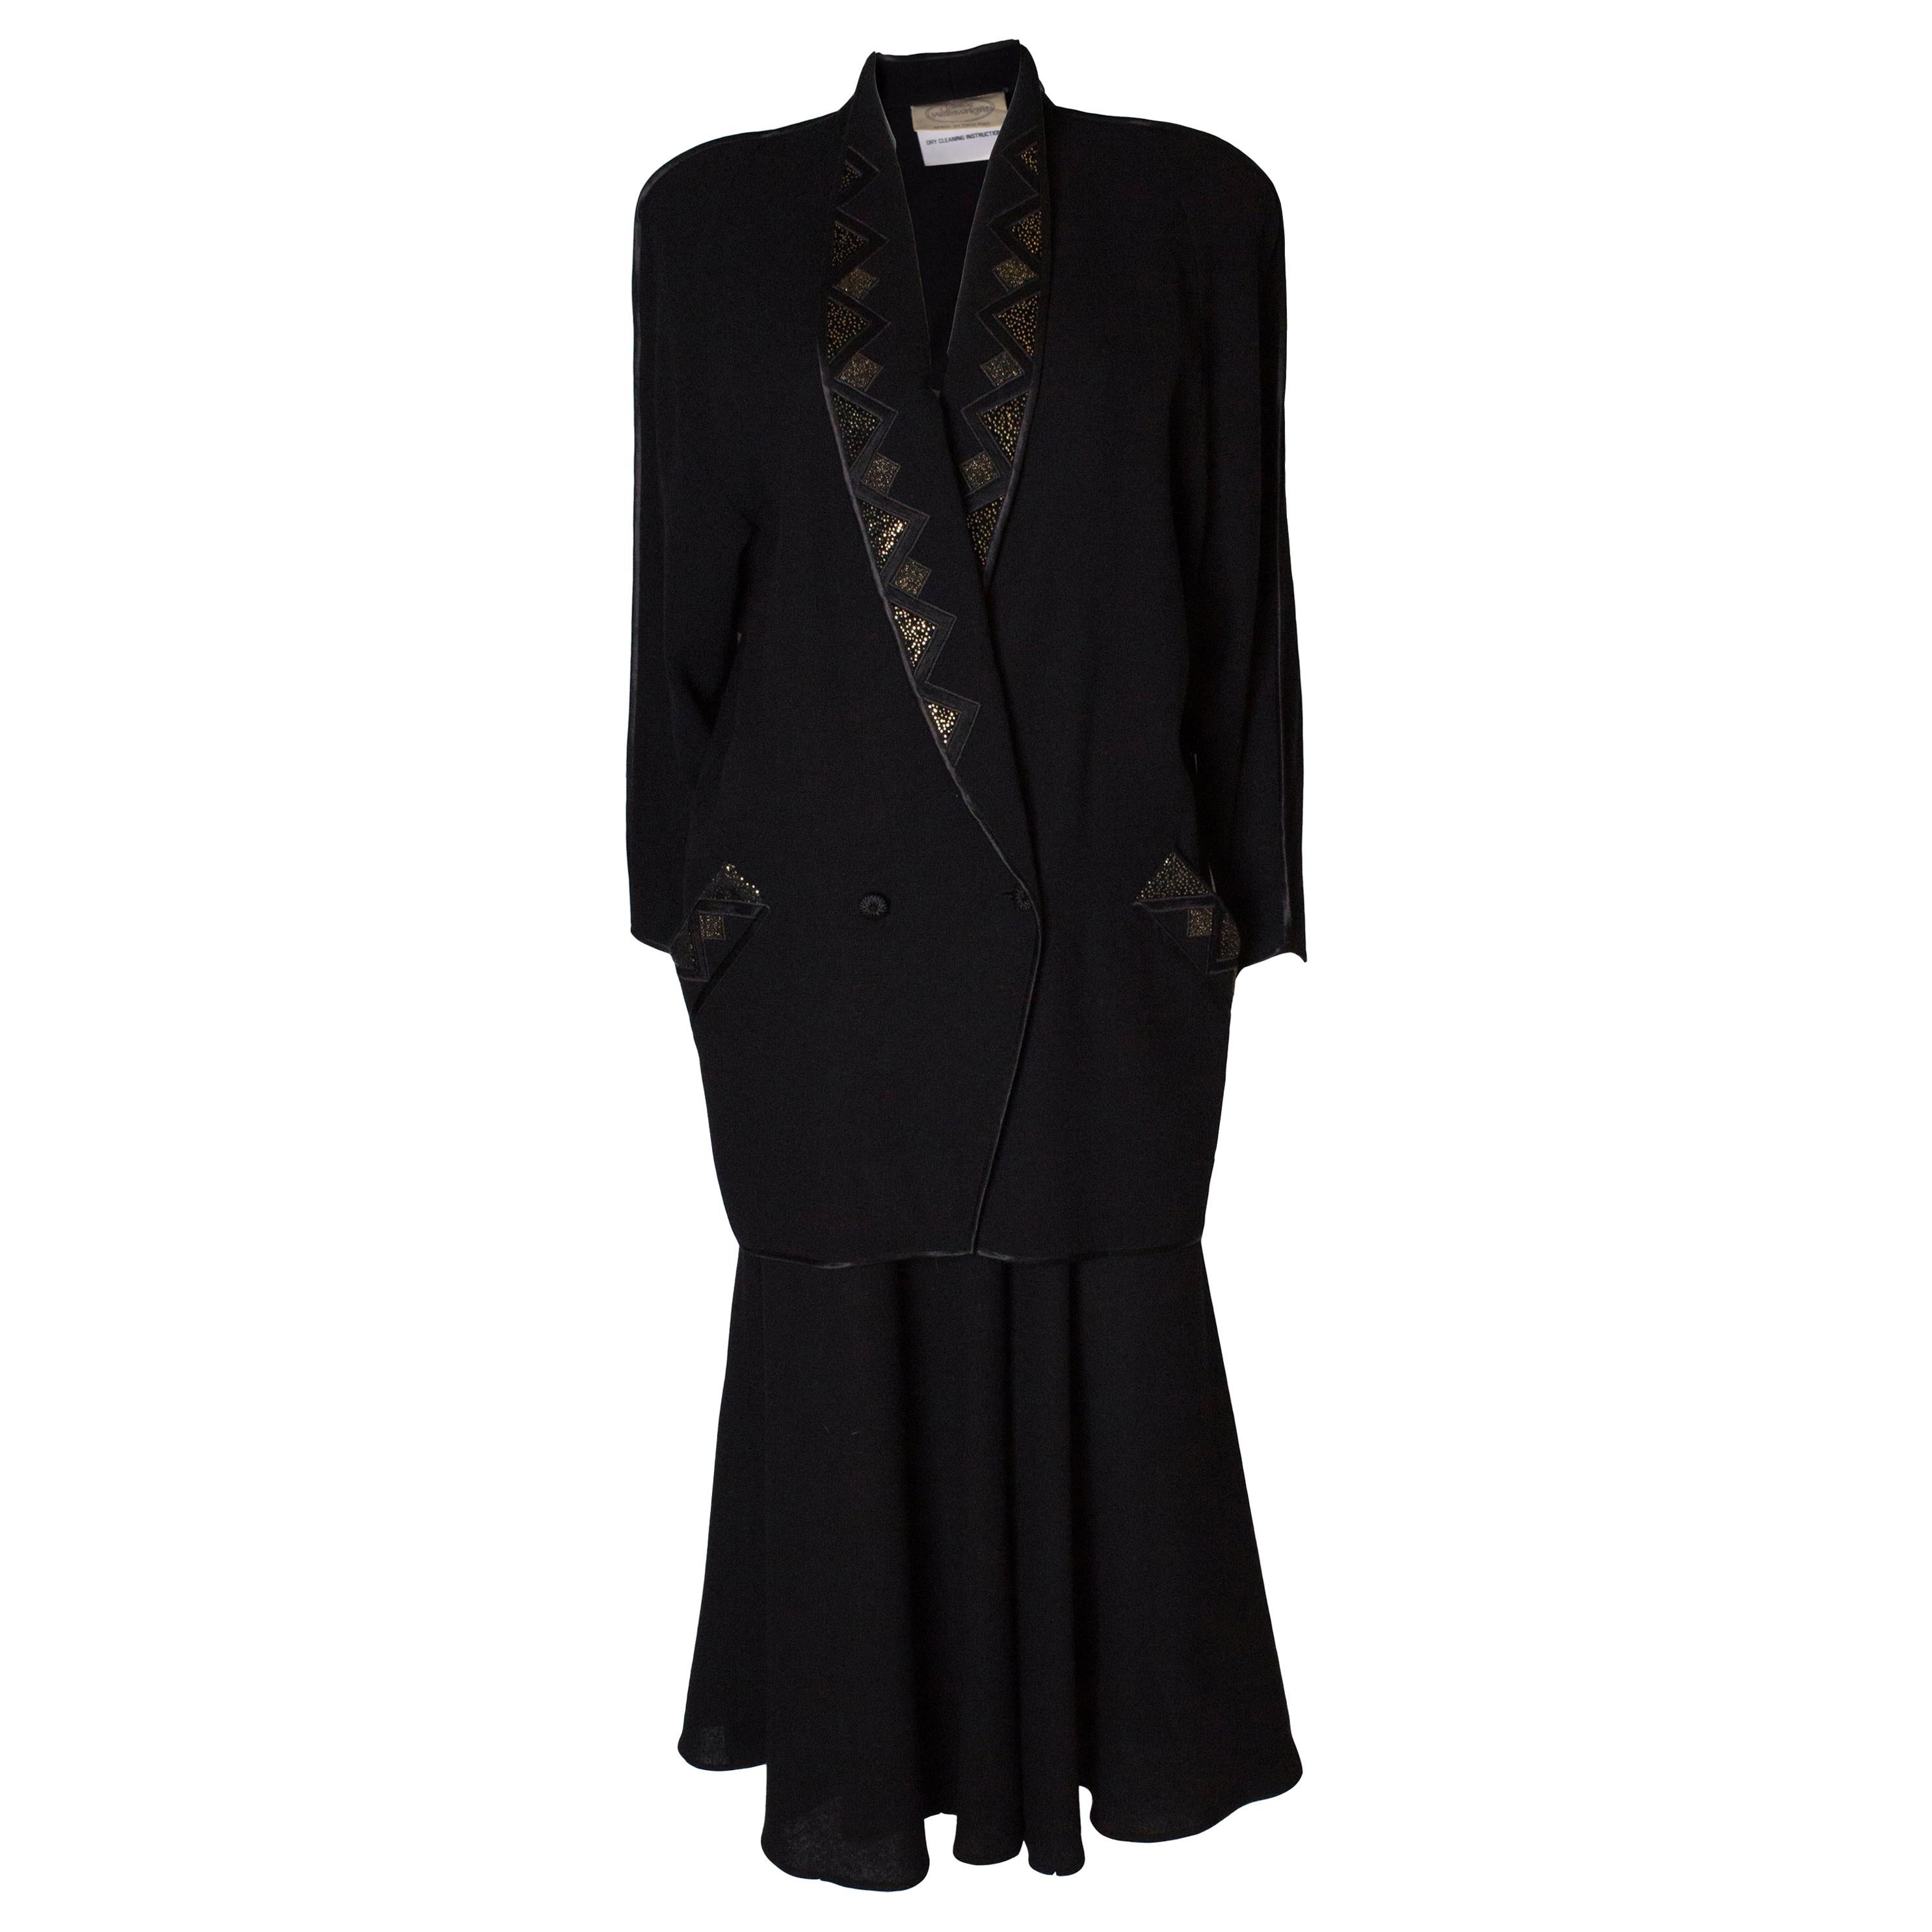  Vintage Janice Wainwright Black Wool Crepe Skirt Suit